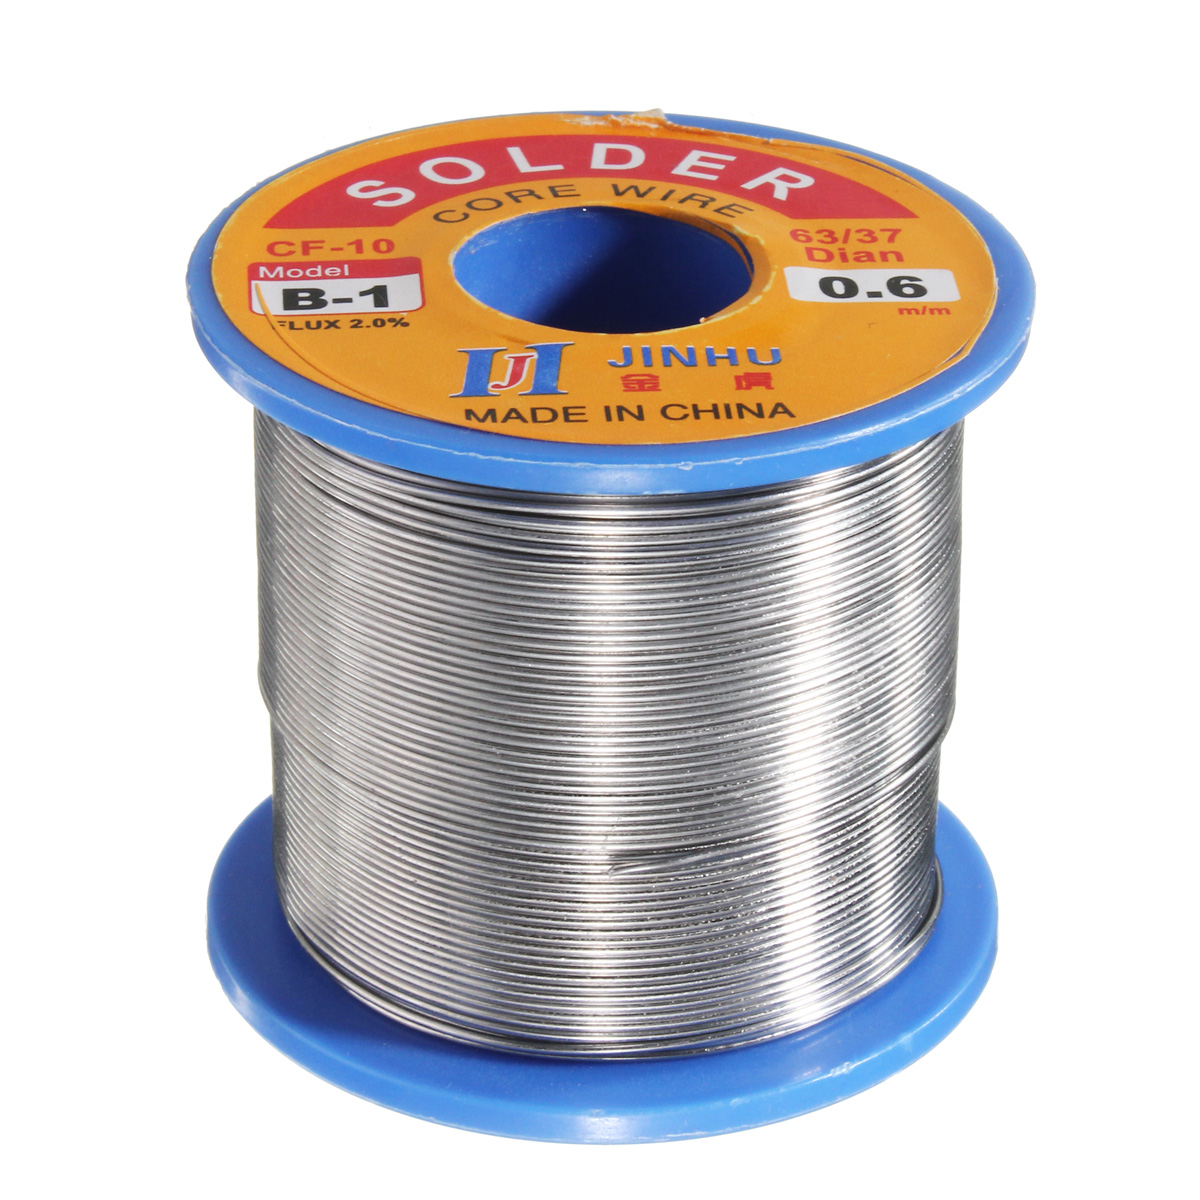 

300g 0.6mm Reel Roll Welding Wire Welding Solder Wire 63/37 Tin Lead 1.2% Flux